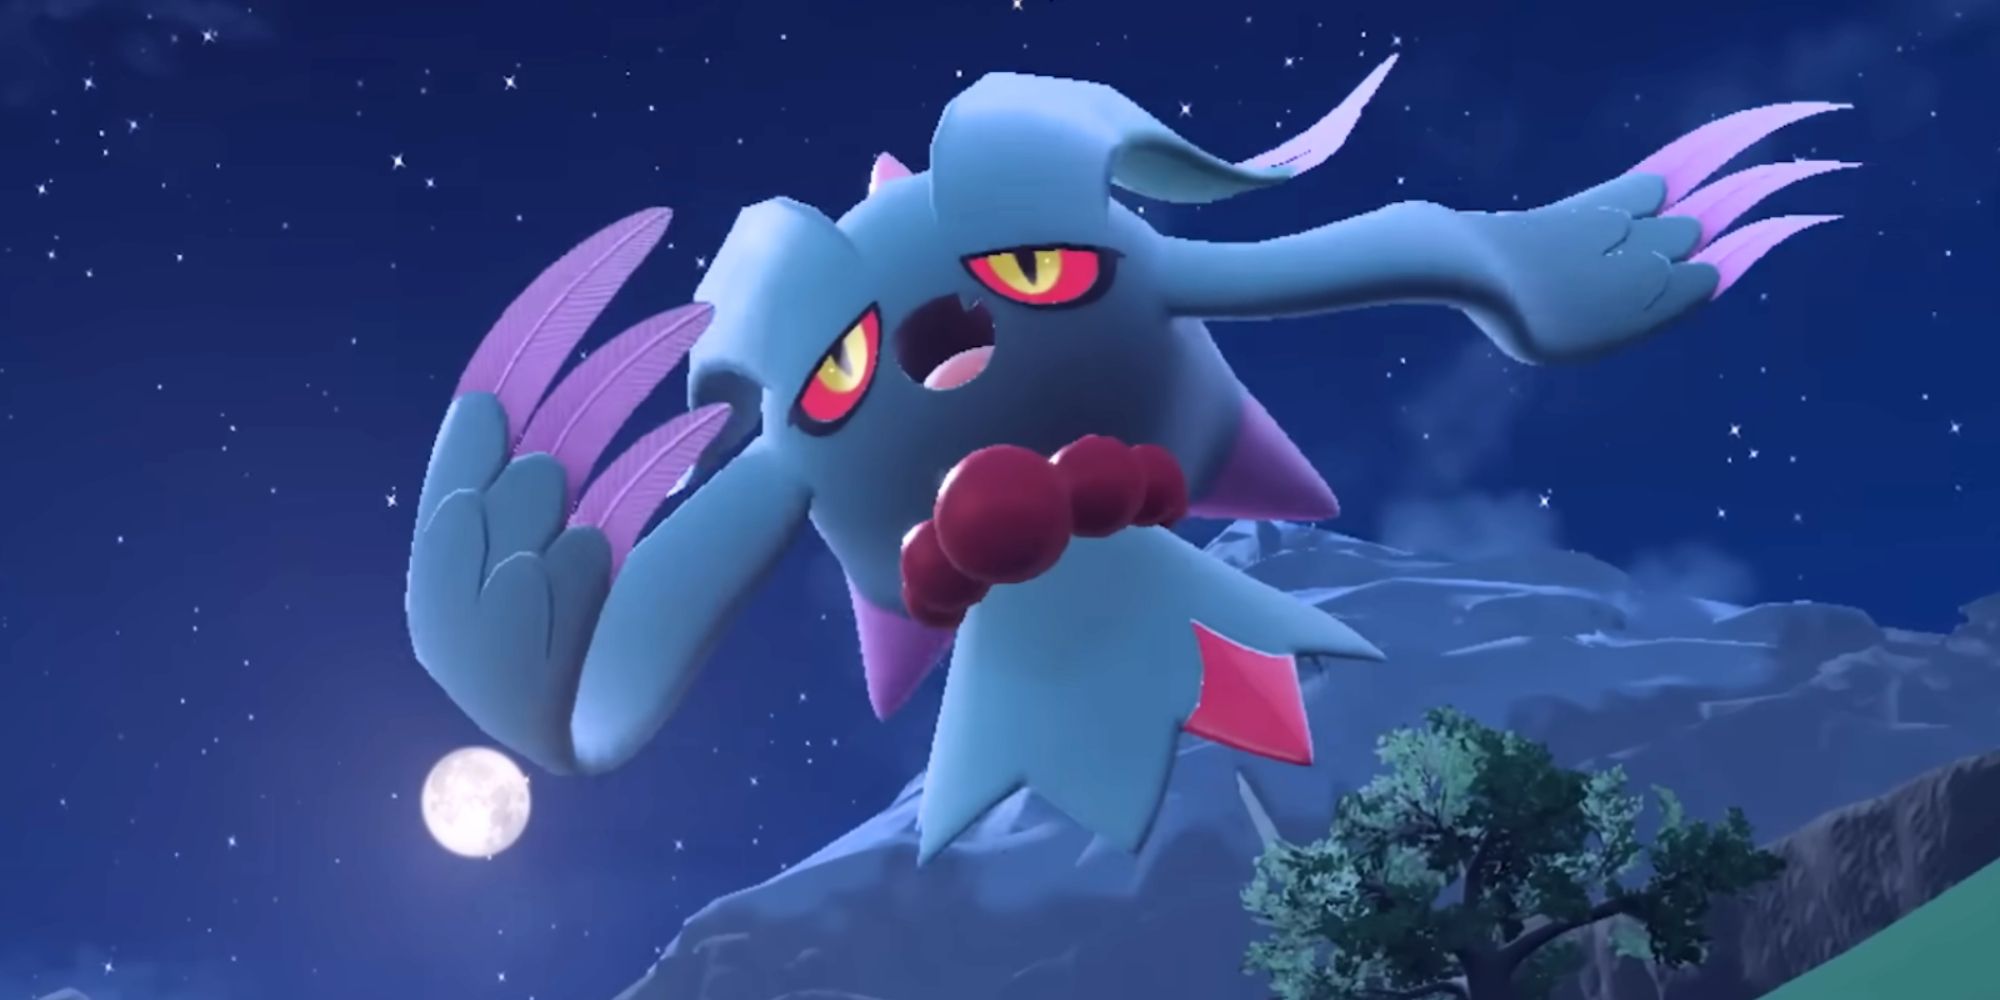 Flutter Mane de Pokémon Escarlata y Violeta flotando en la noche